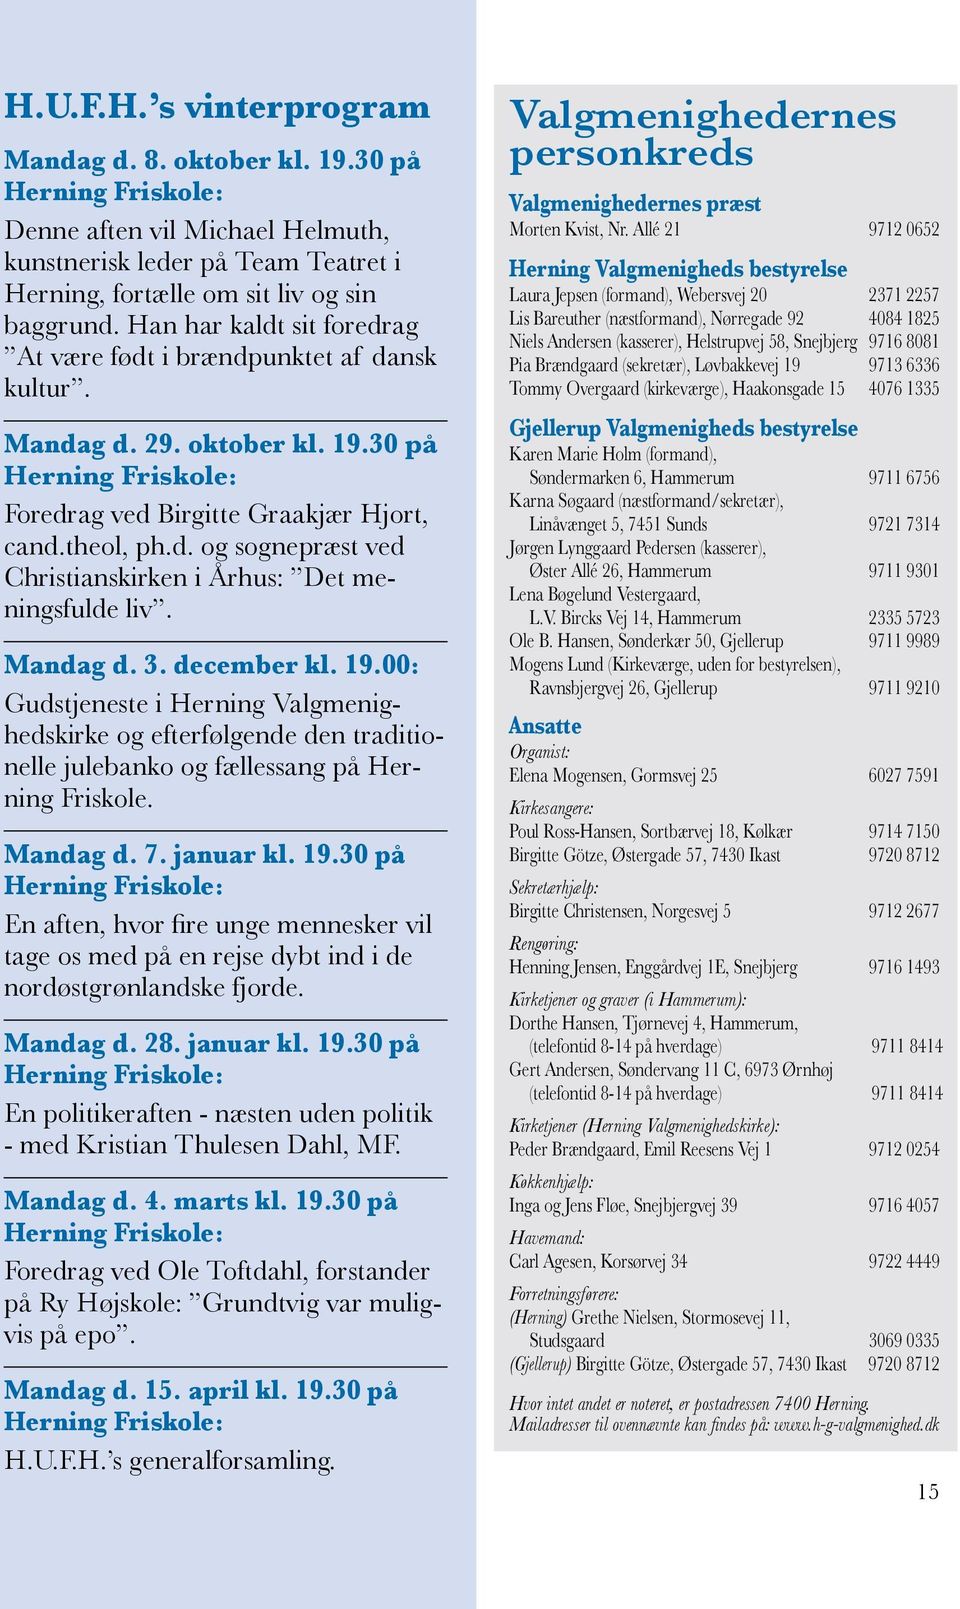 Mandag d. 3. december kl. 19.00: Gudstjeneste i Herning Valgmenighedskirke og efterfølgende den traditionelle julebanko og fællessang på Herning Friskole. Mandag d. 7. januar kl. 19.30 på Herning Friskole: En aften, hvor fire unge mennesker vil tage os med på en rejse dybt ind i de nordøstgrønlandske fjorde.